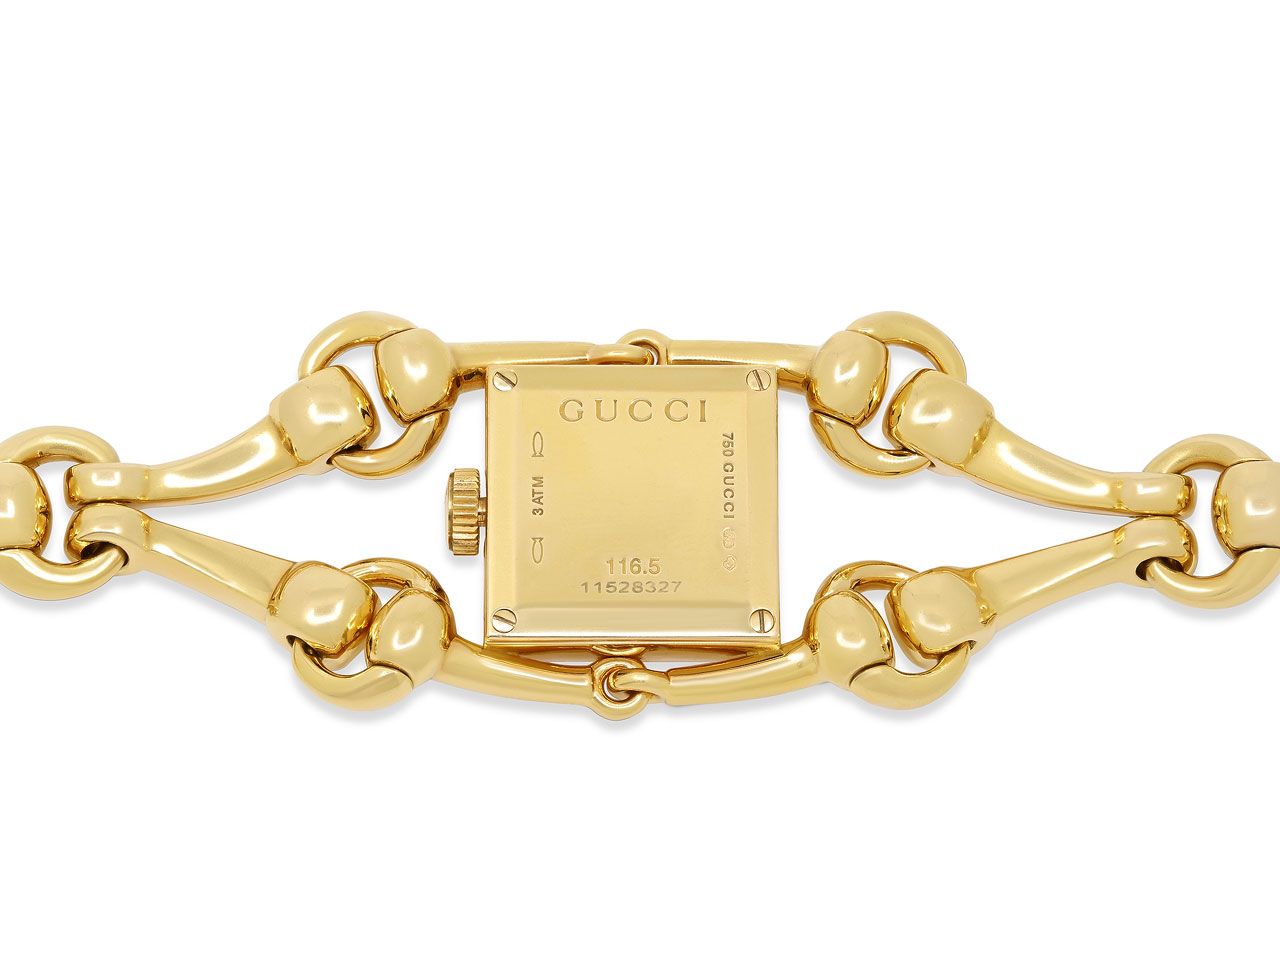 Gucci Horsebit 'Signoria' Watch in 18K Gold